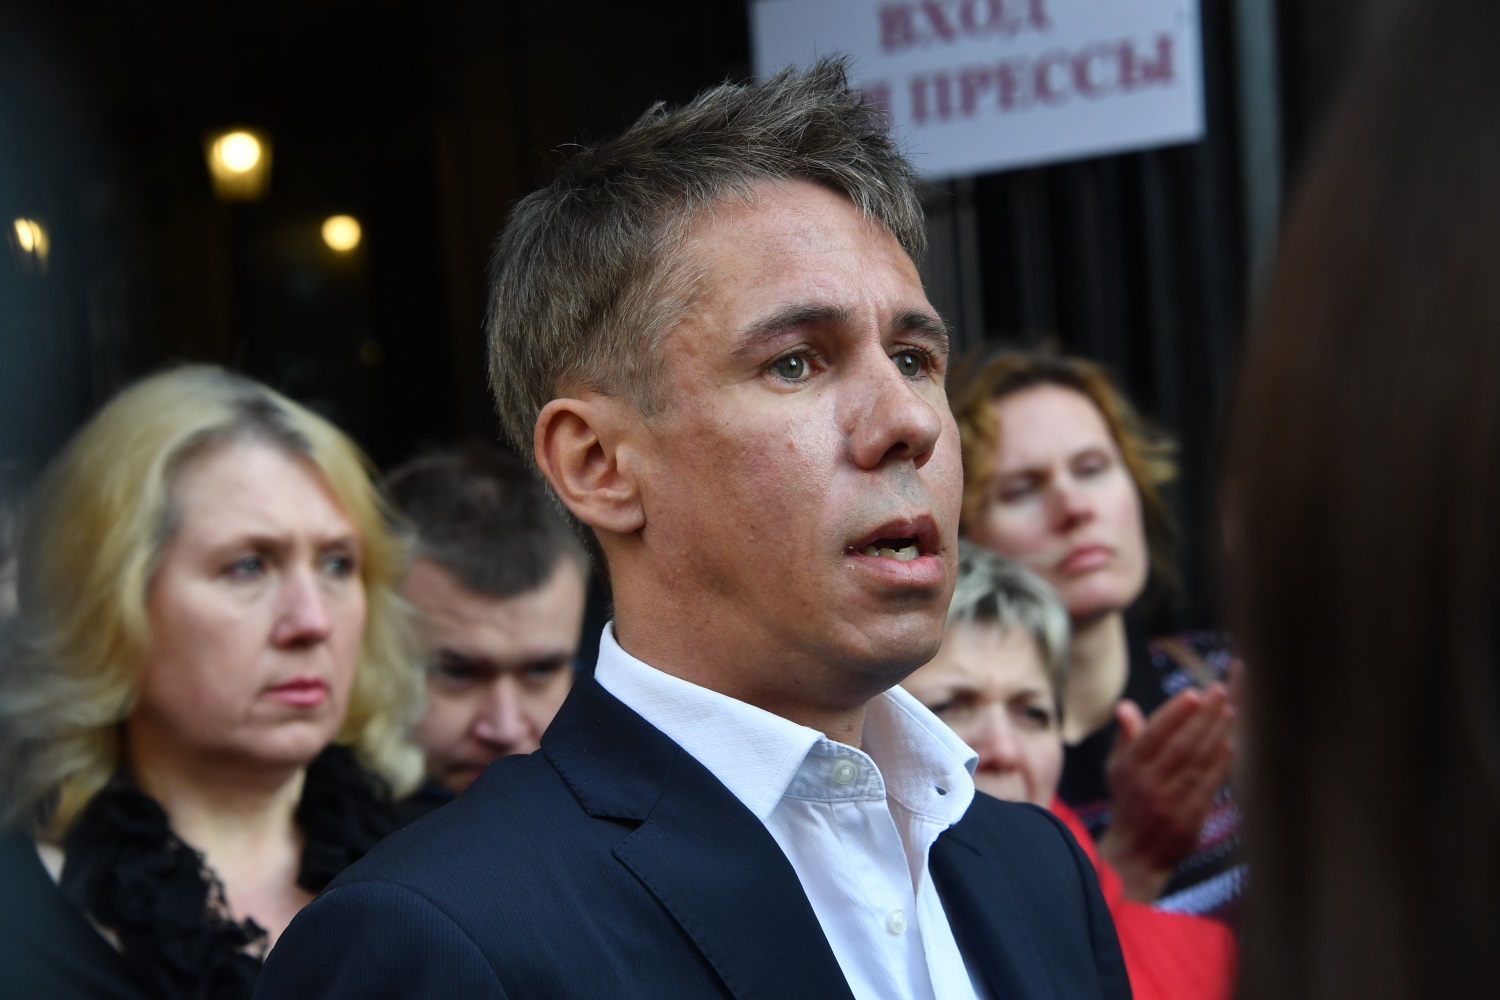 МВД объявило в розыск актера Алексея Панина